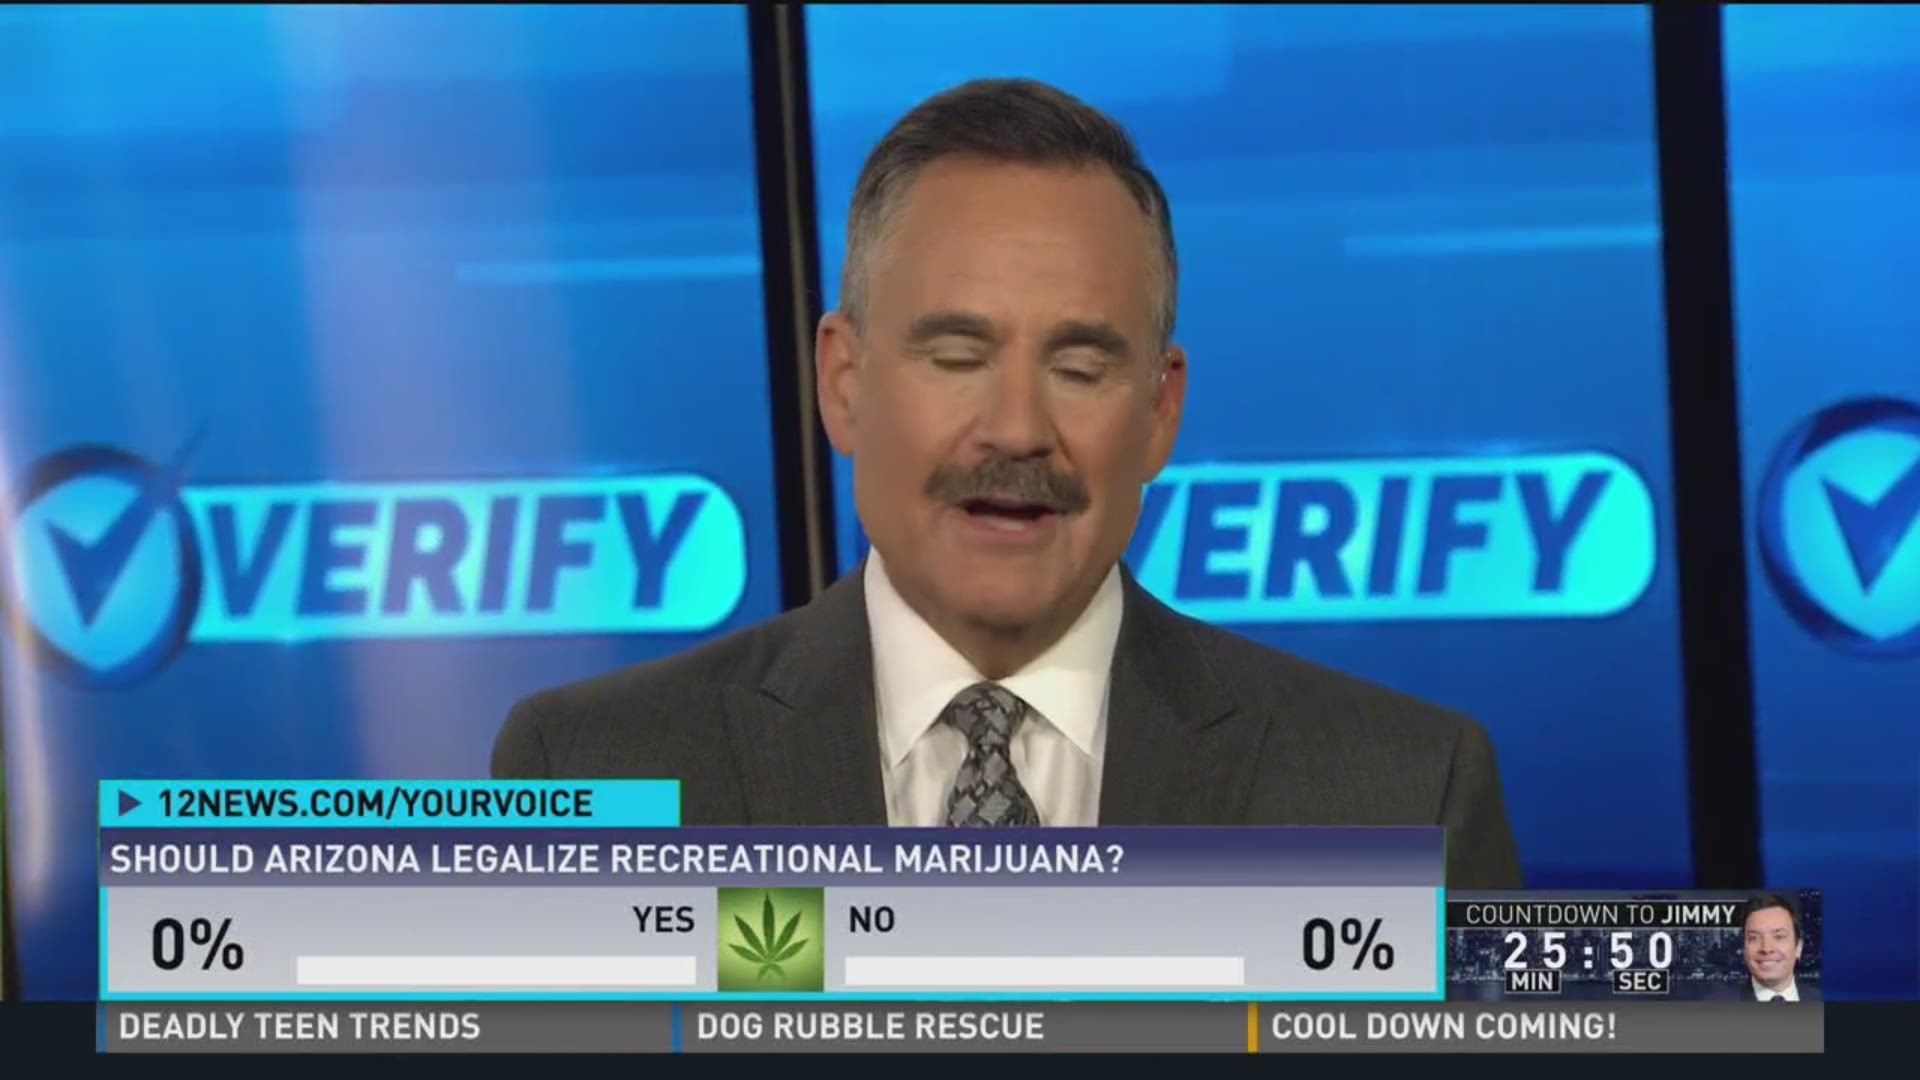 Should Arizona legalize recreational marijuana?